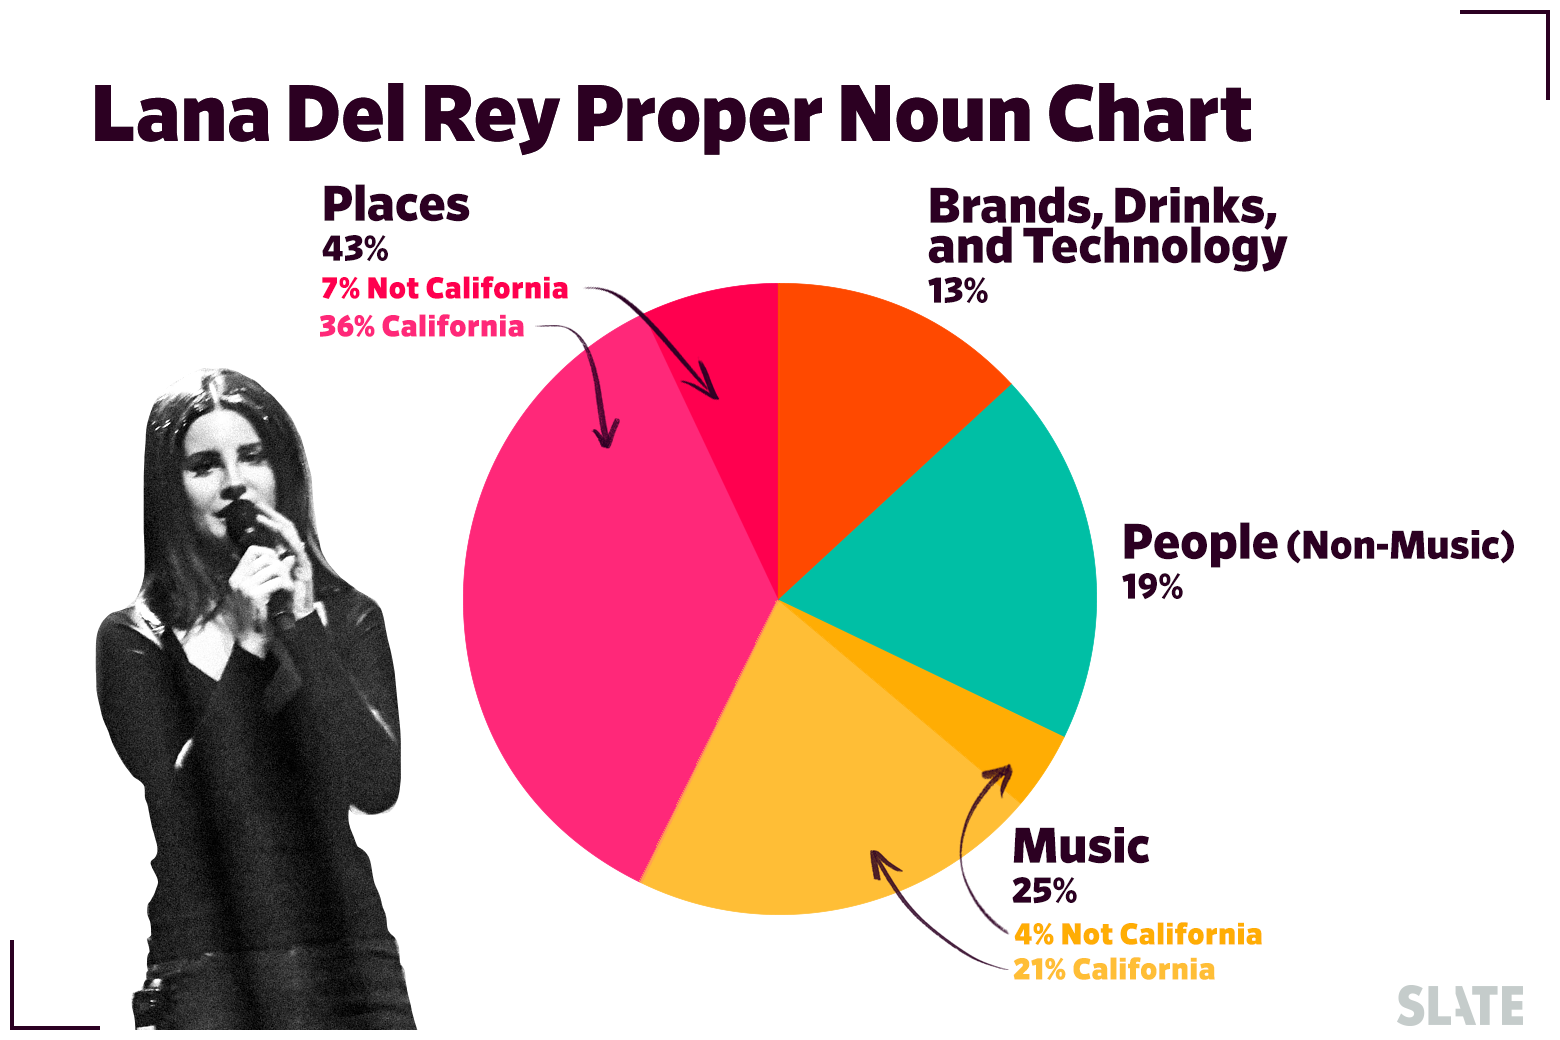 The Lana Del Rey Proper Noun Chart